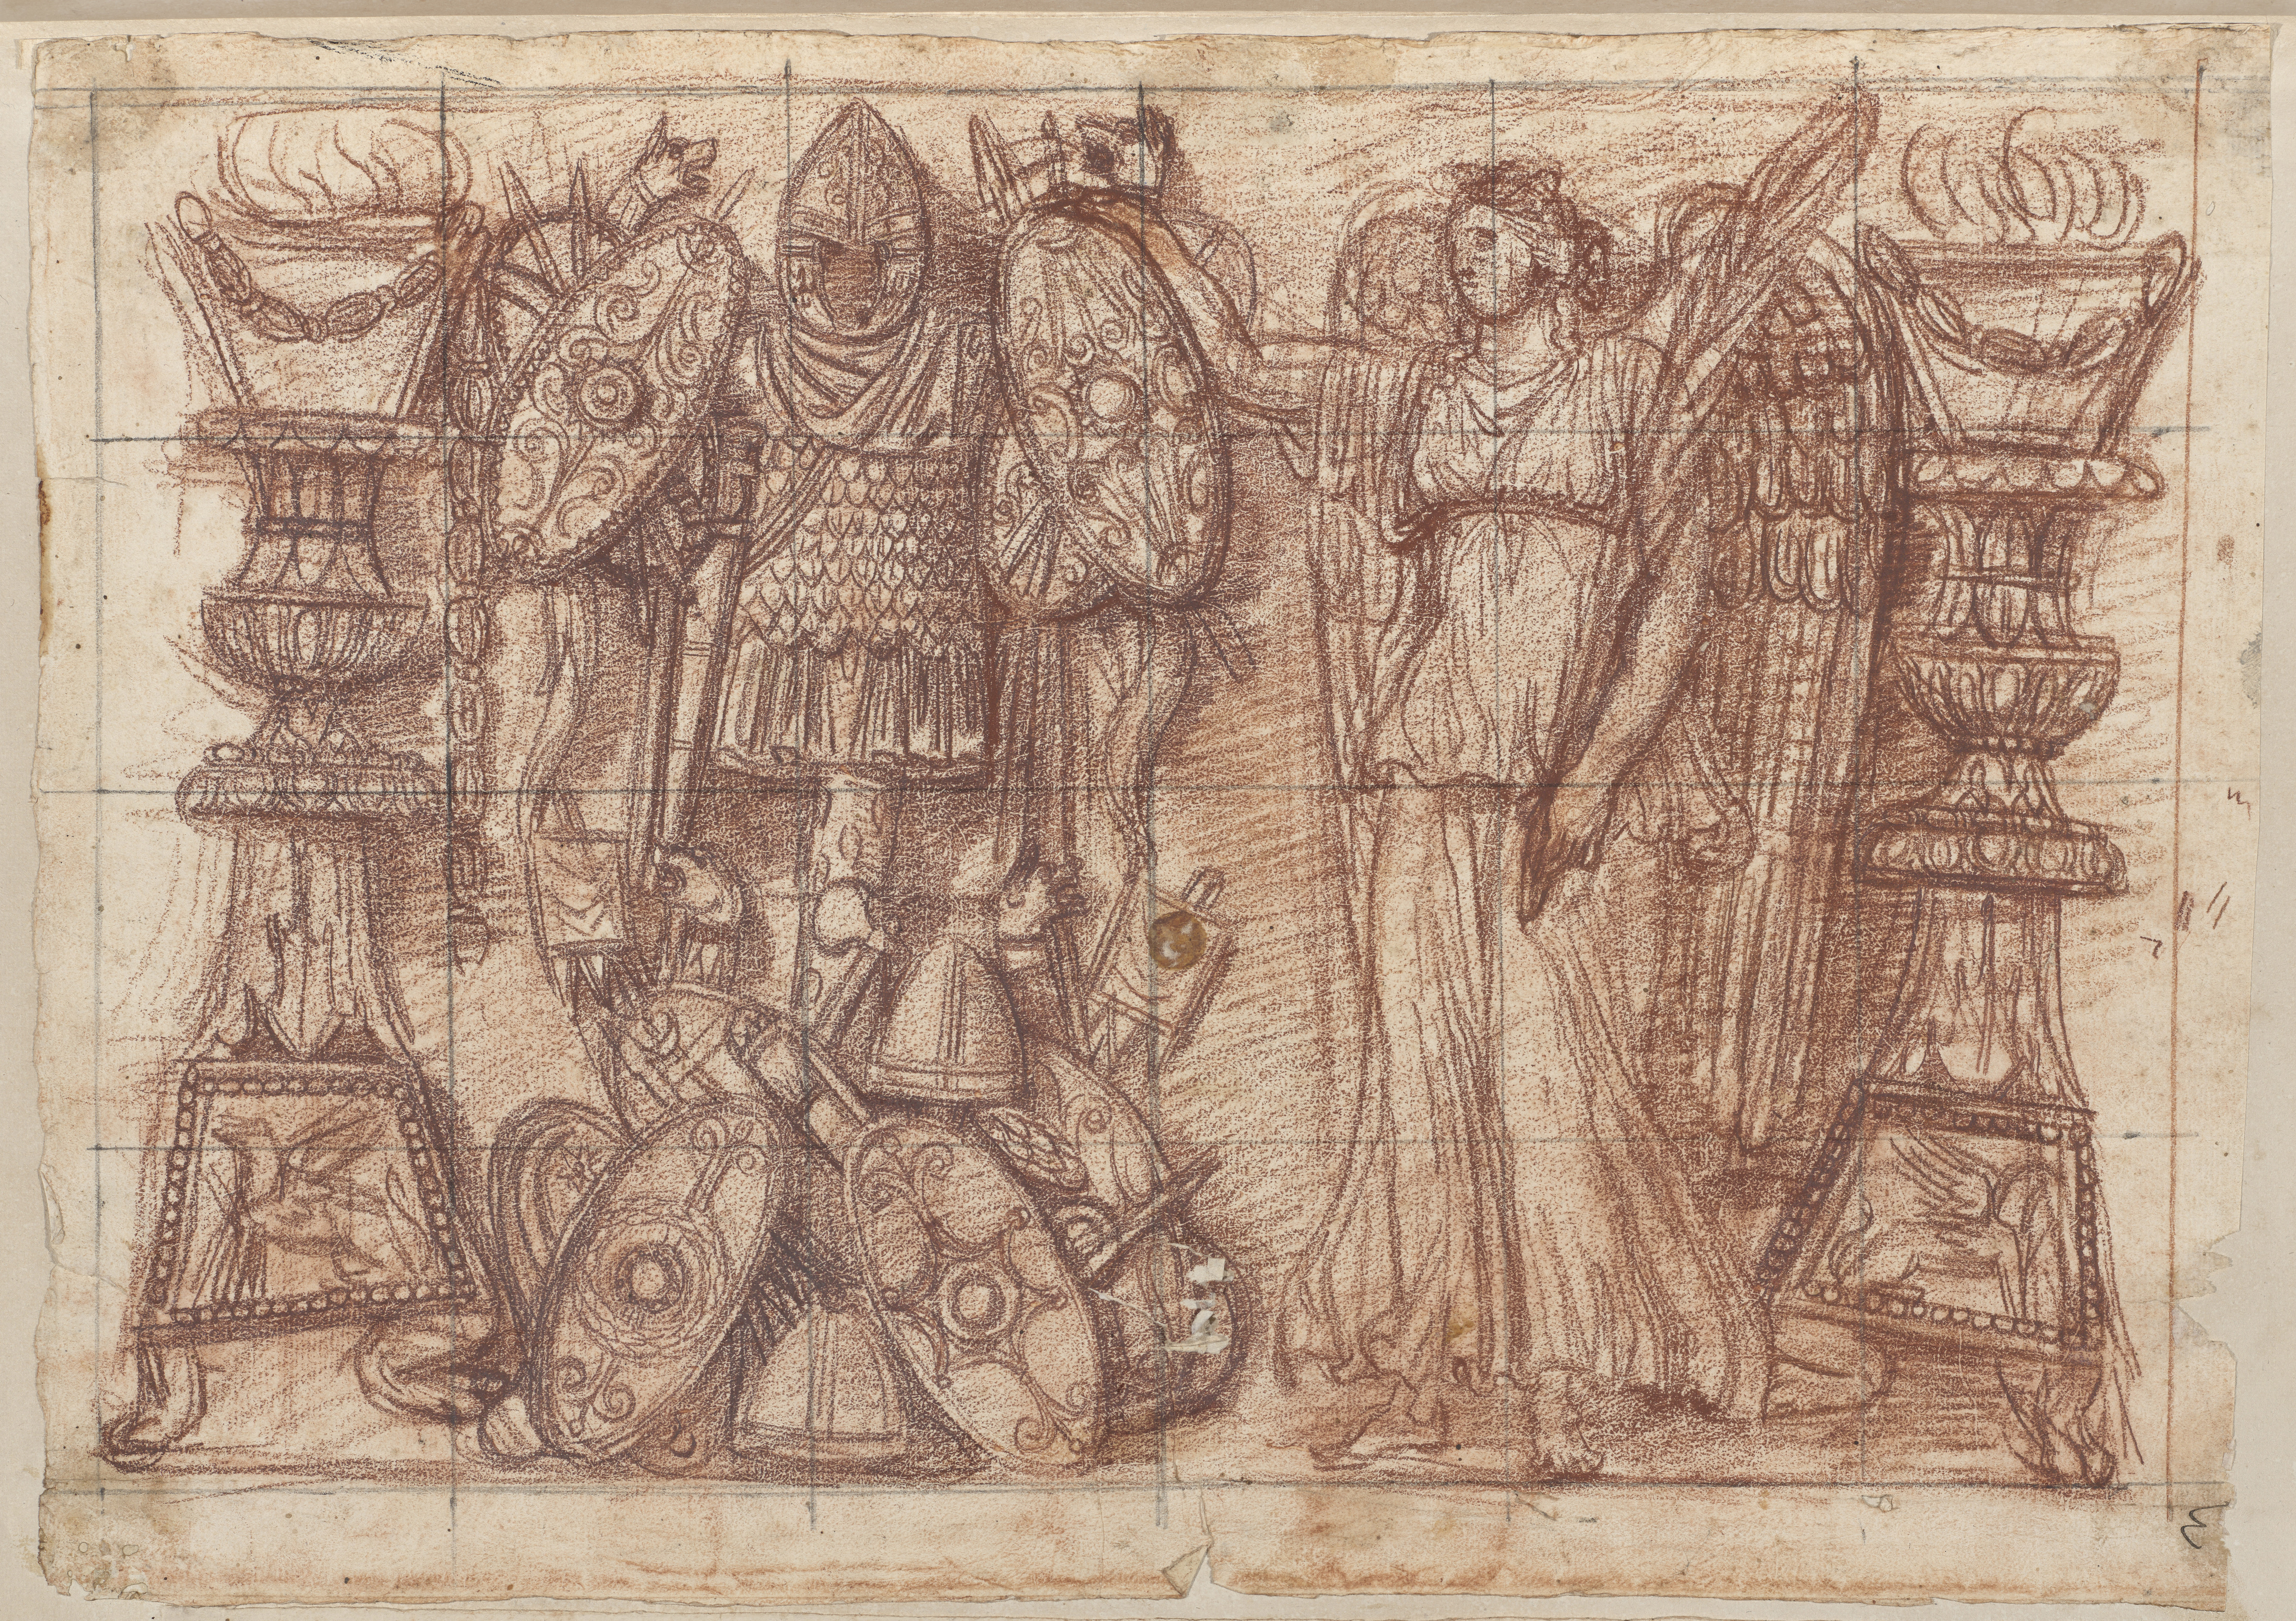 Zeichnung des Viktoria-Trophäen-Reliefs, Abschnitt D mit Rötelkreide und schwarzer Kreide oder schwarzem Stift. Dargestellt ist die Allegorie des Sieges mit Kriegsattributen